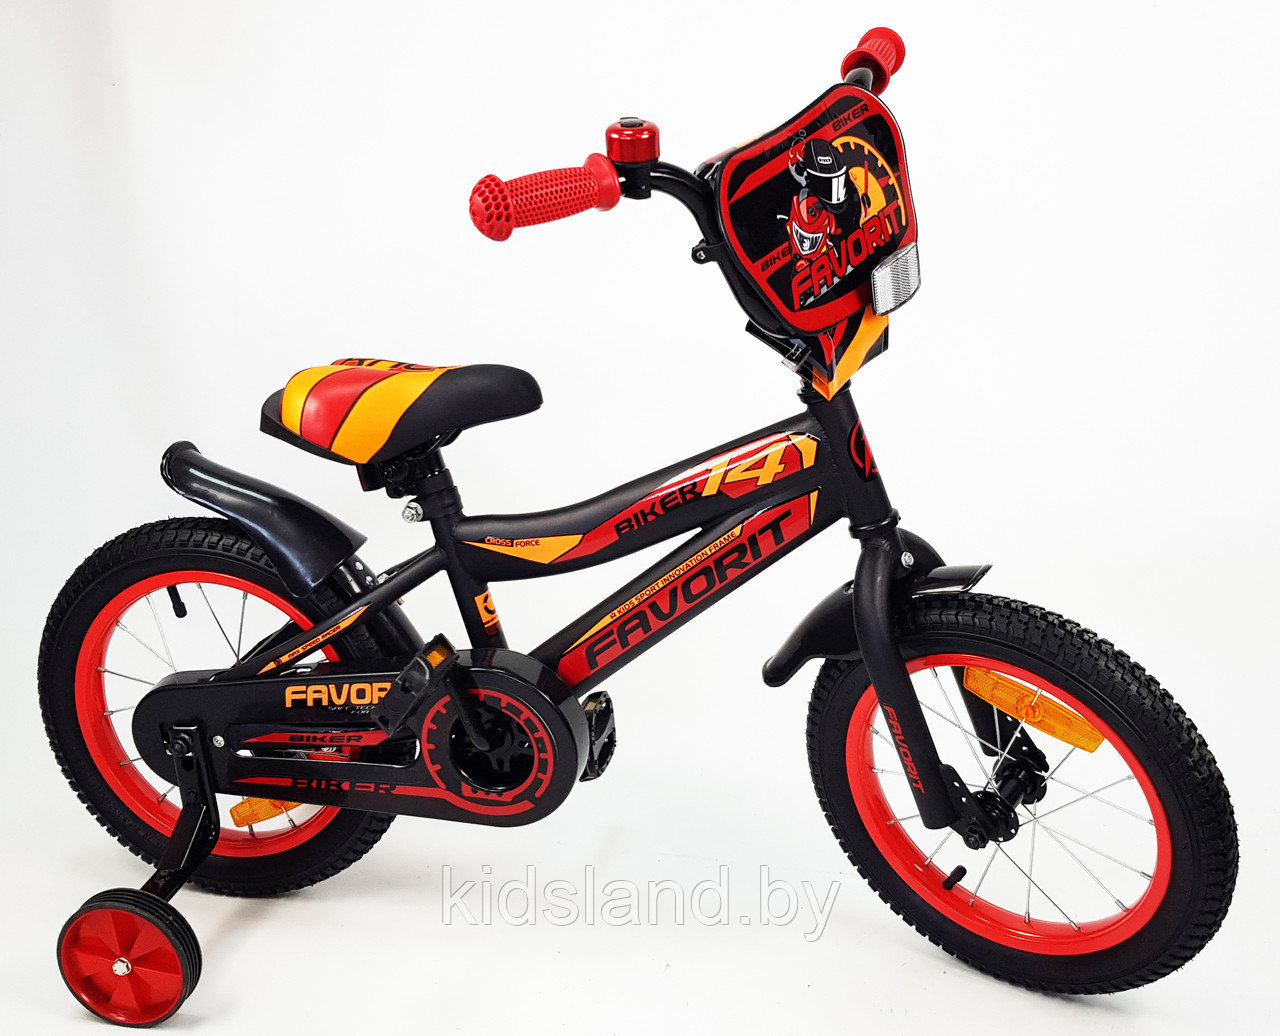 Детский велосипед Favorit Biker 14'' (красно-черный)